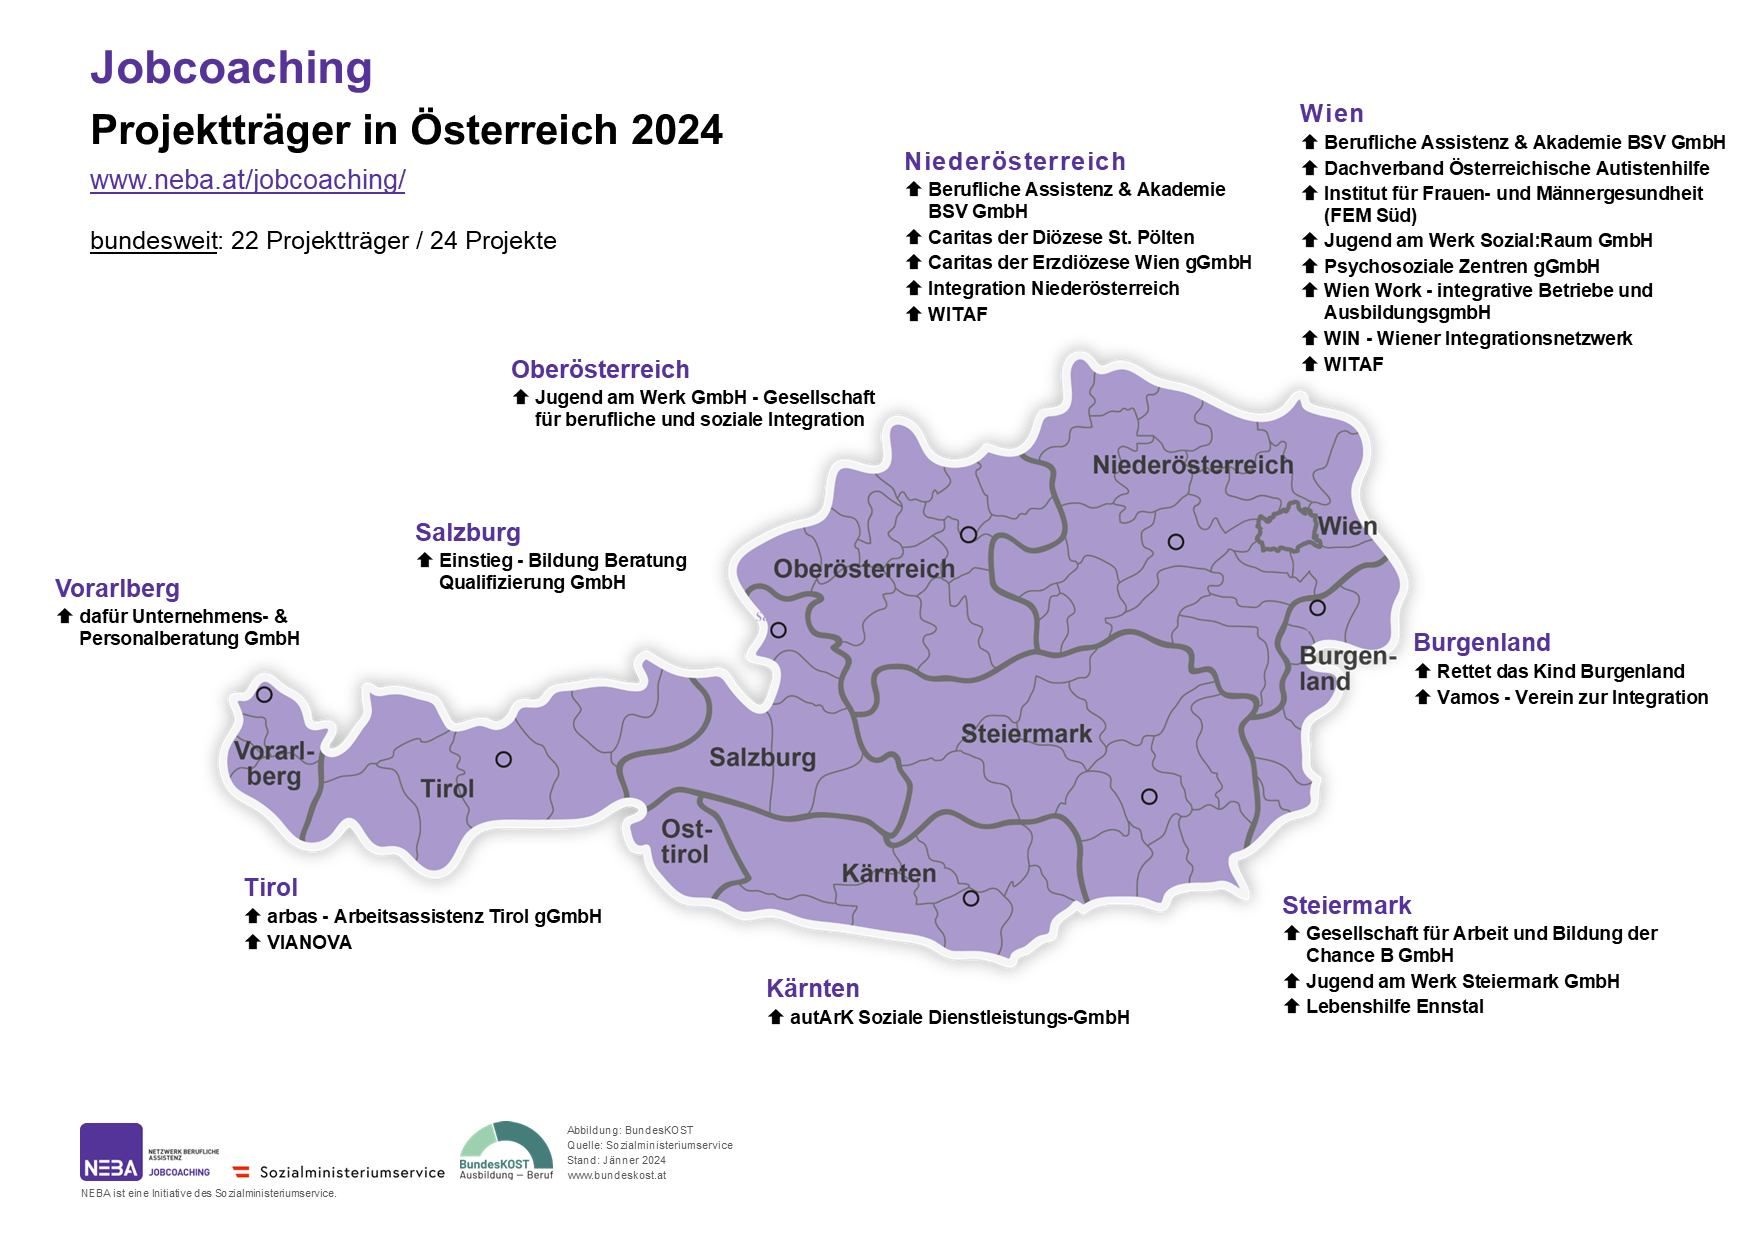 Karte von Österreich mit Jobcoaching Projekten, siehe auch barrierefreie Textversion Arbeitsassistenz Projektträger 2024 (PDF)